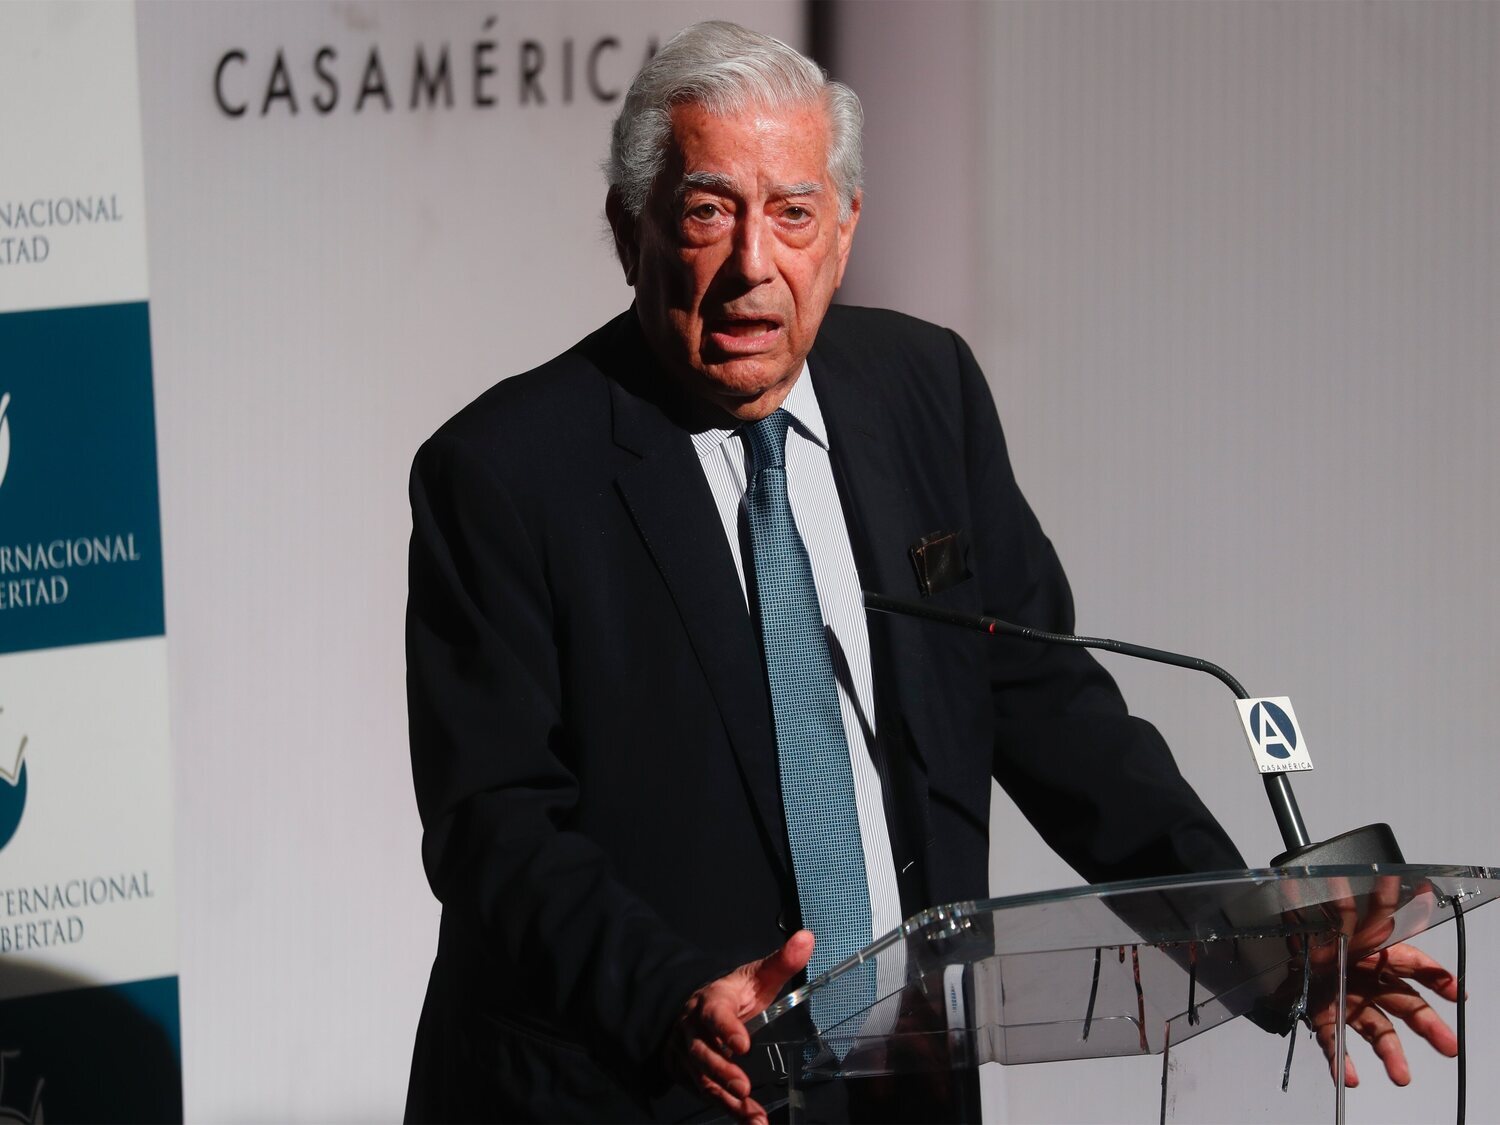 Vargas Llosa defiende que "votar bien" es elegir entre "partidos de centro y derecha"